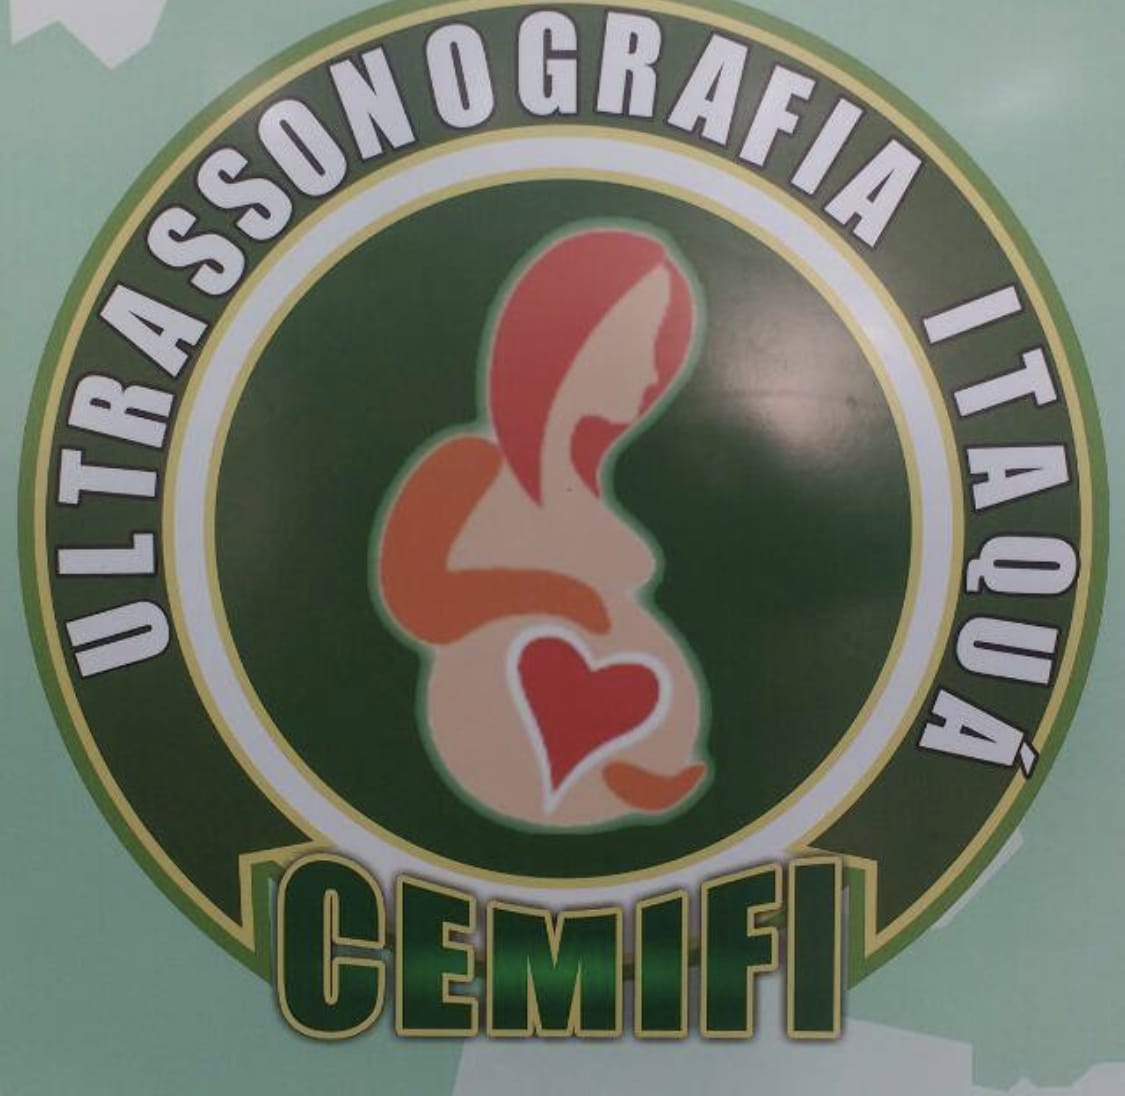 CEMIFI Ultrassonografia Itaquá